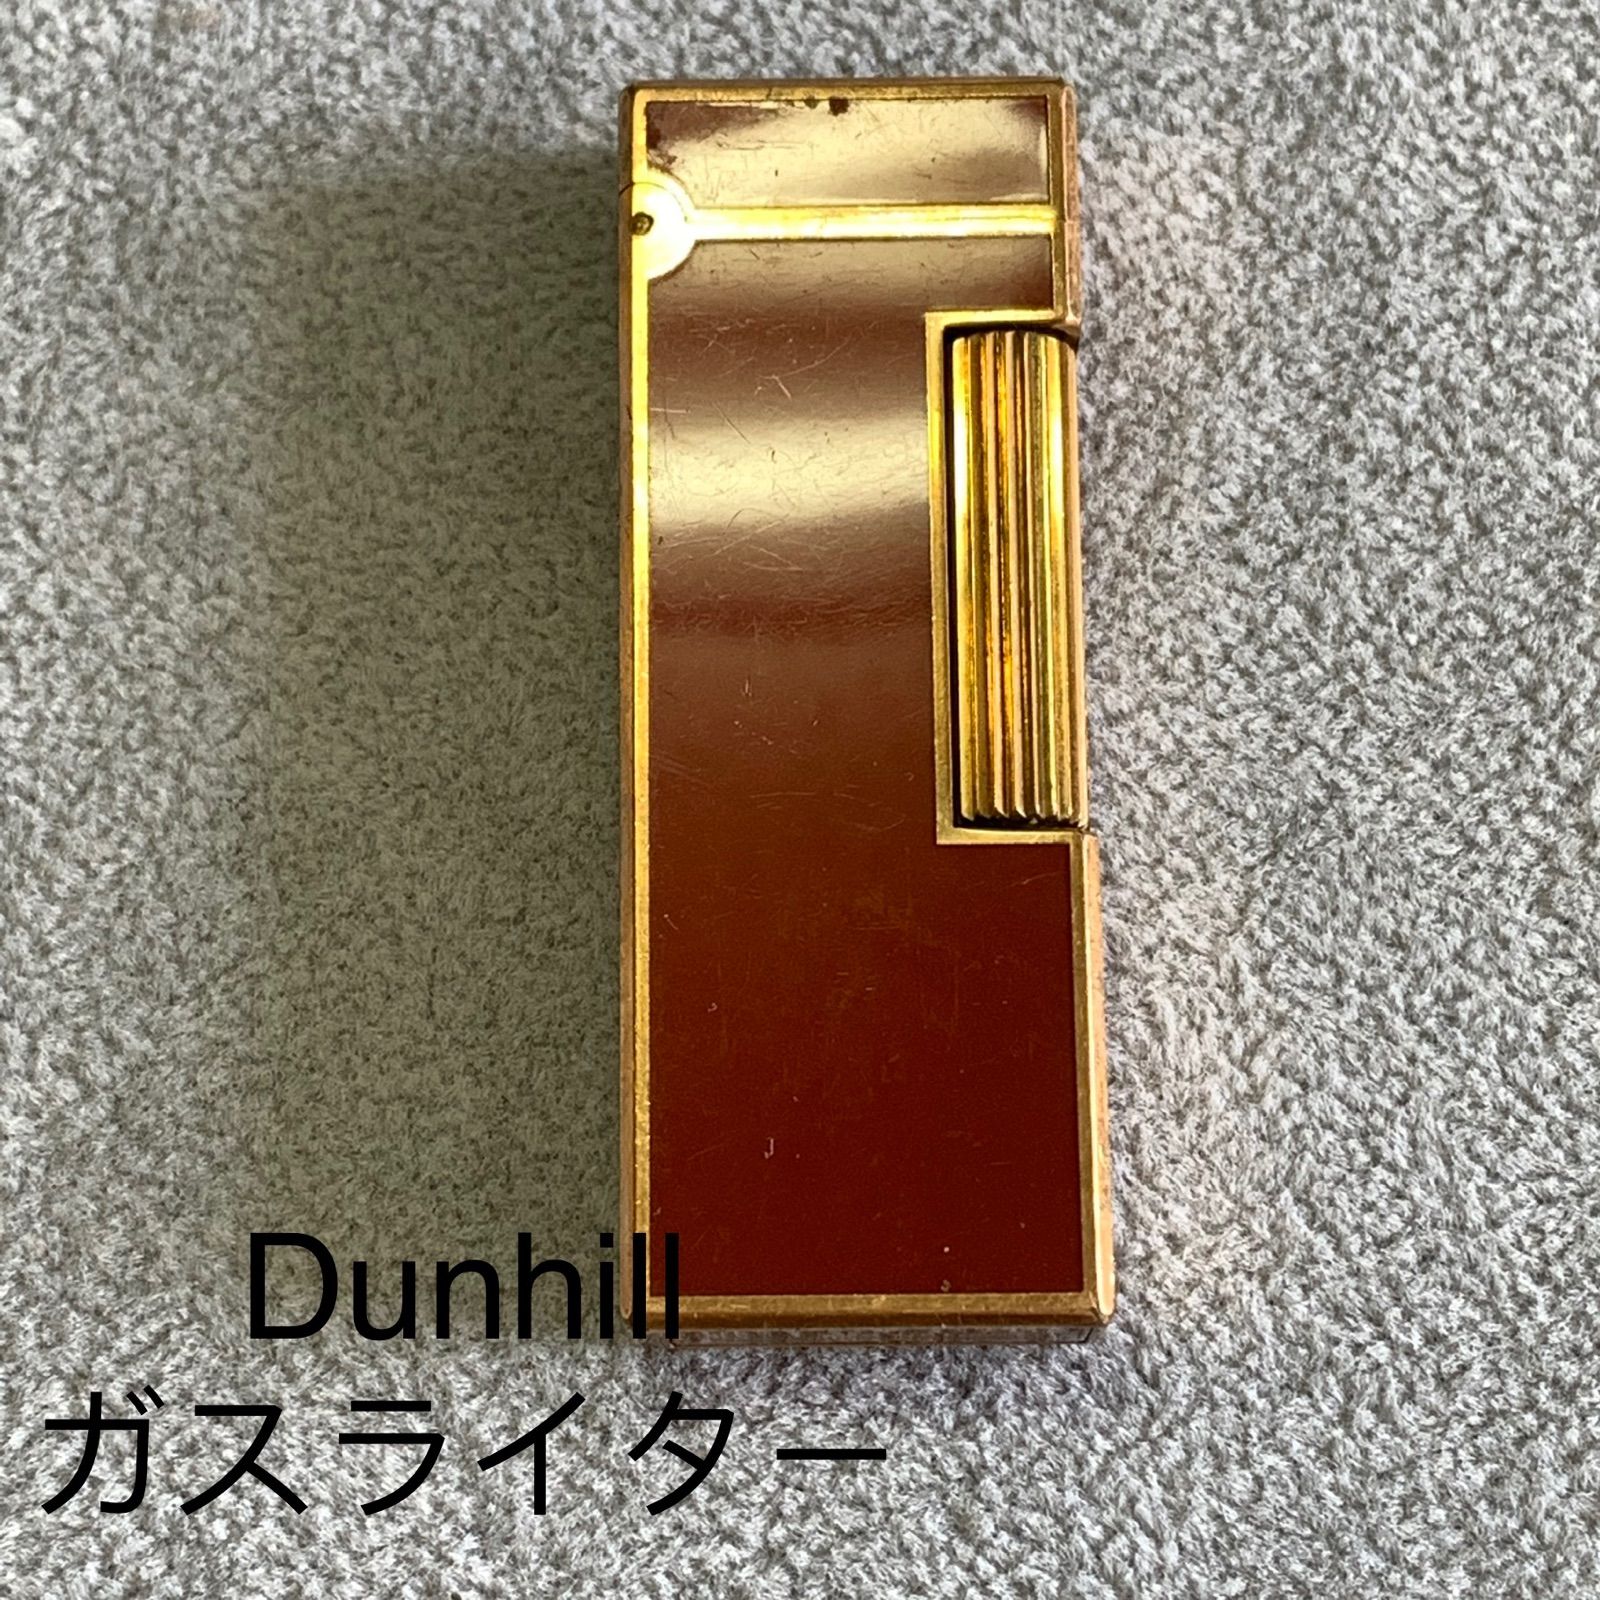 Dunhill ダンヒル ライター 赤 - メルカリ